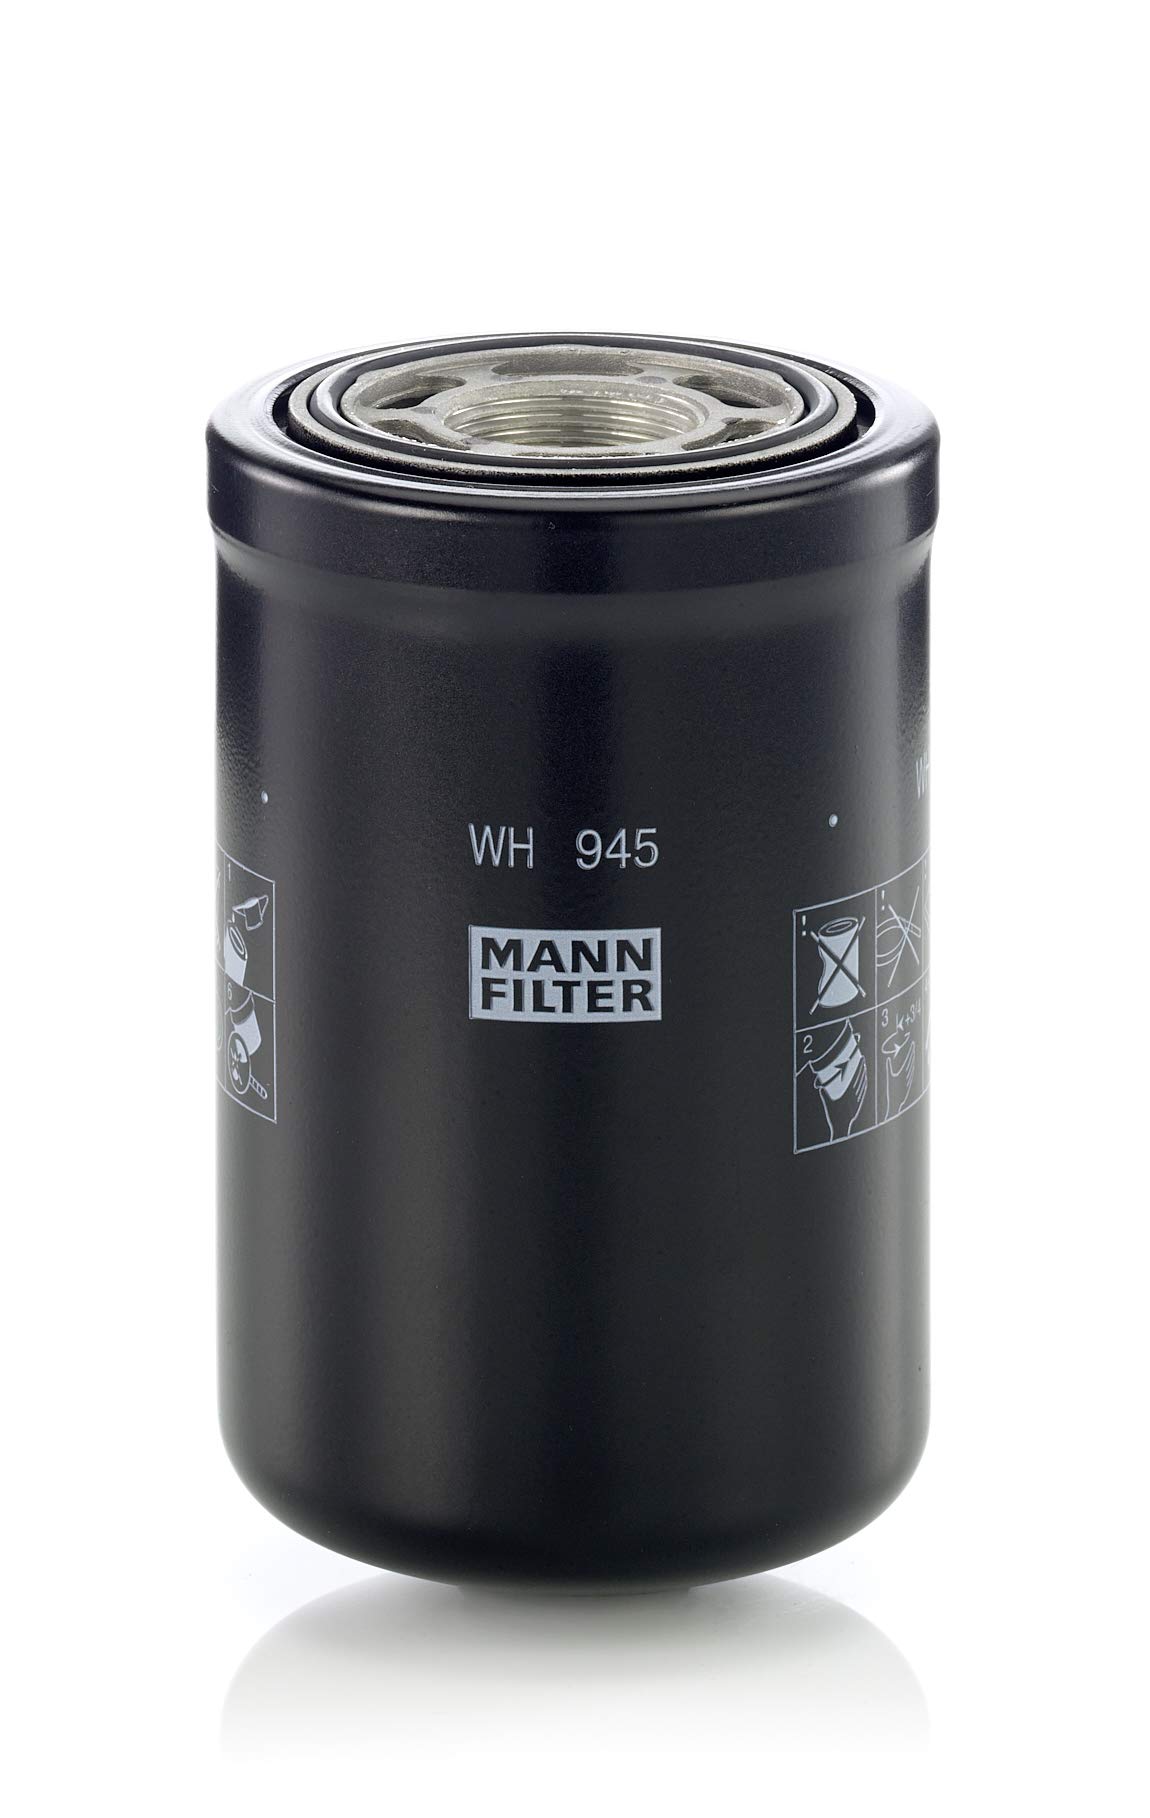 MANN-FILTER WH 945 Hydraulikfilter – Für Industrie, Land- und Baumaschinen von MANN-FILTER